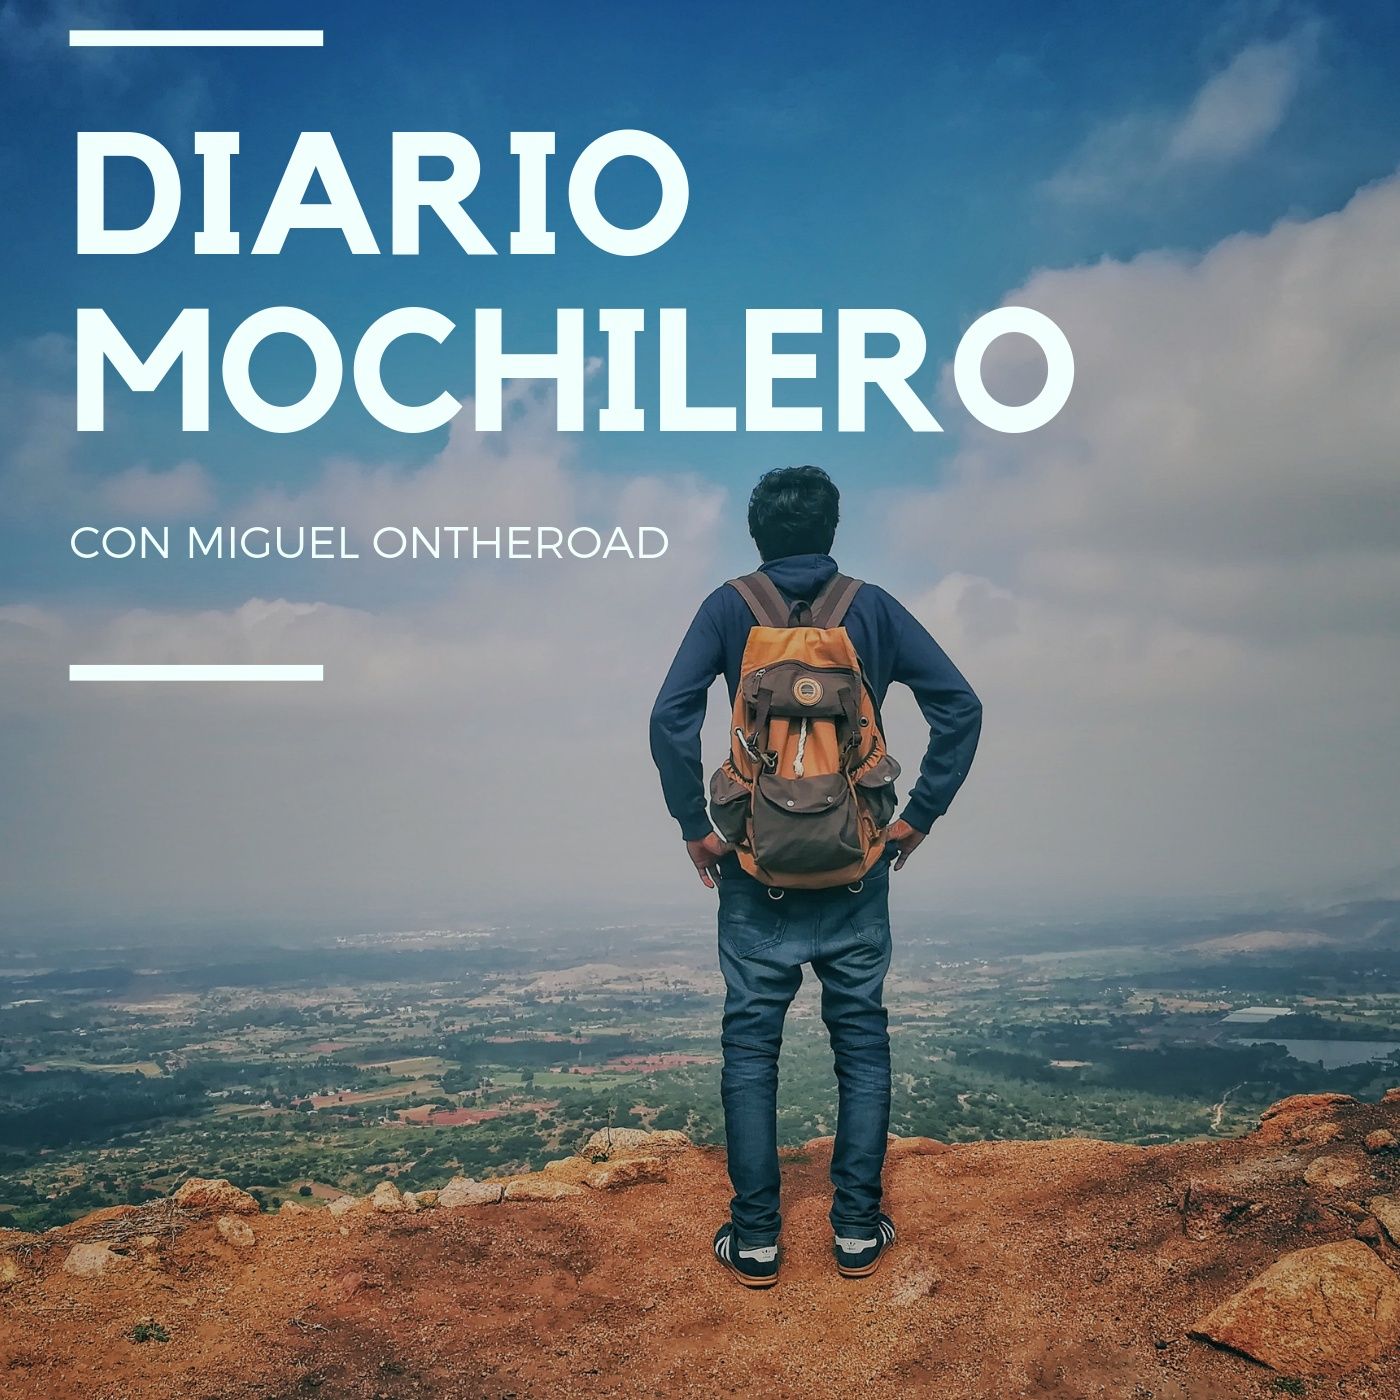 Diario Mochilero